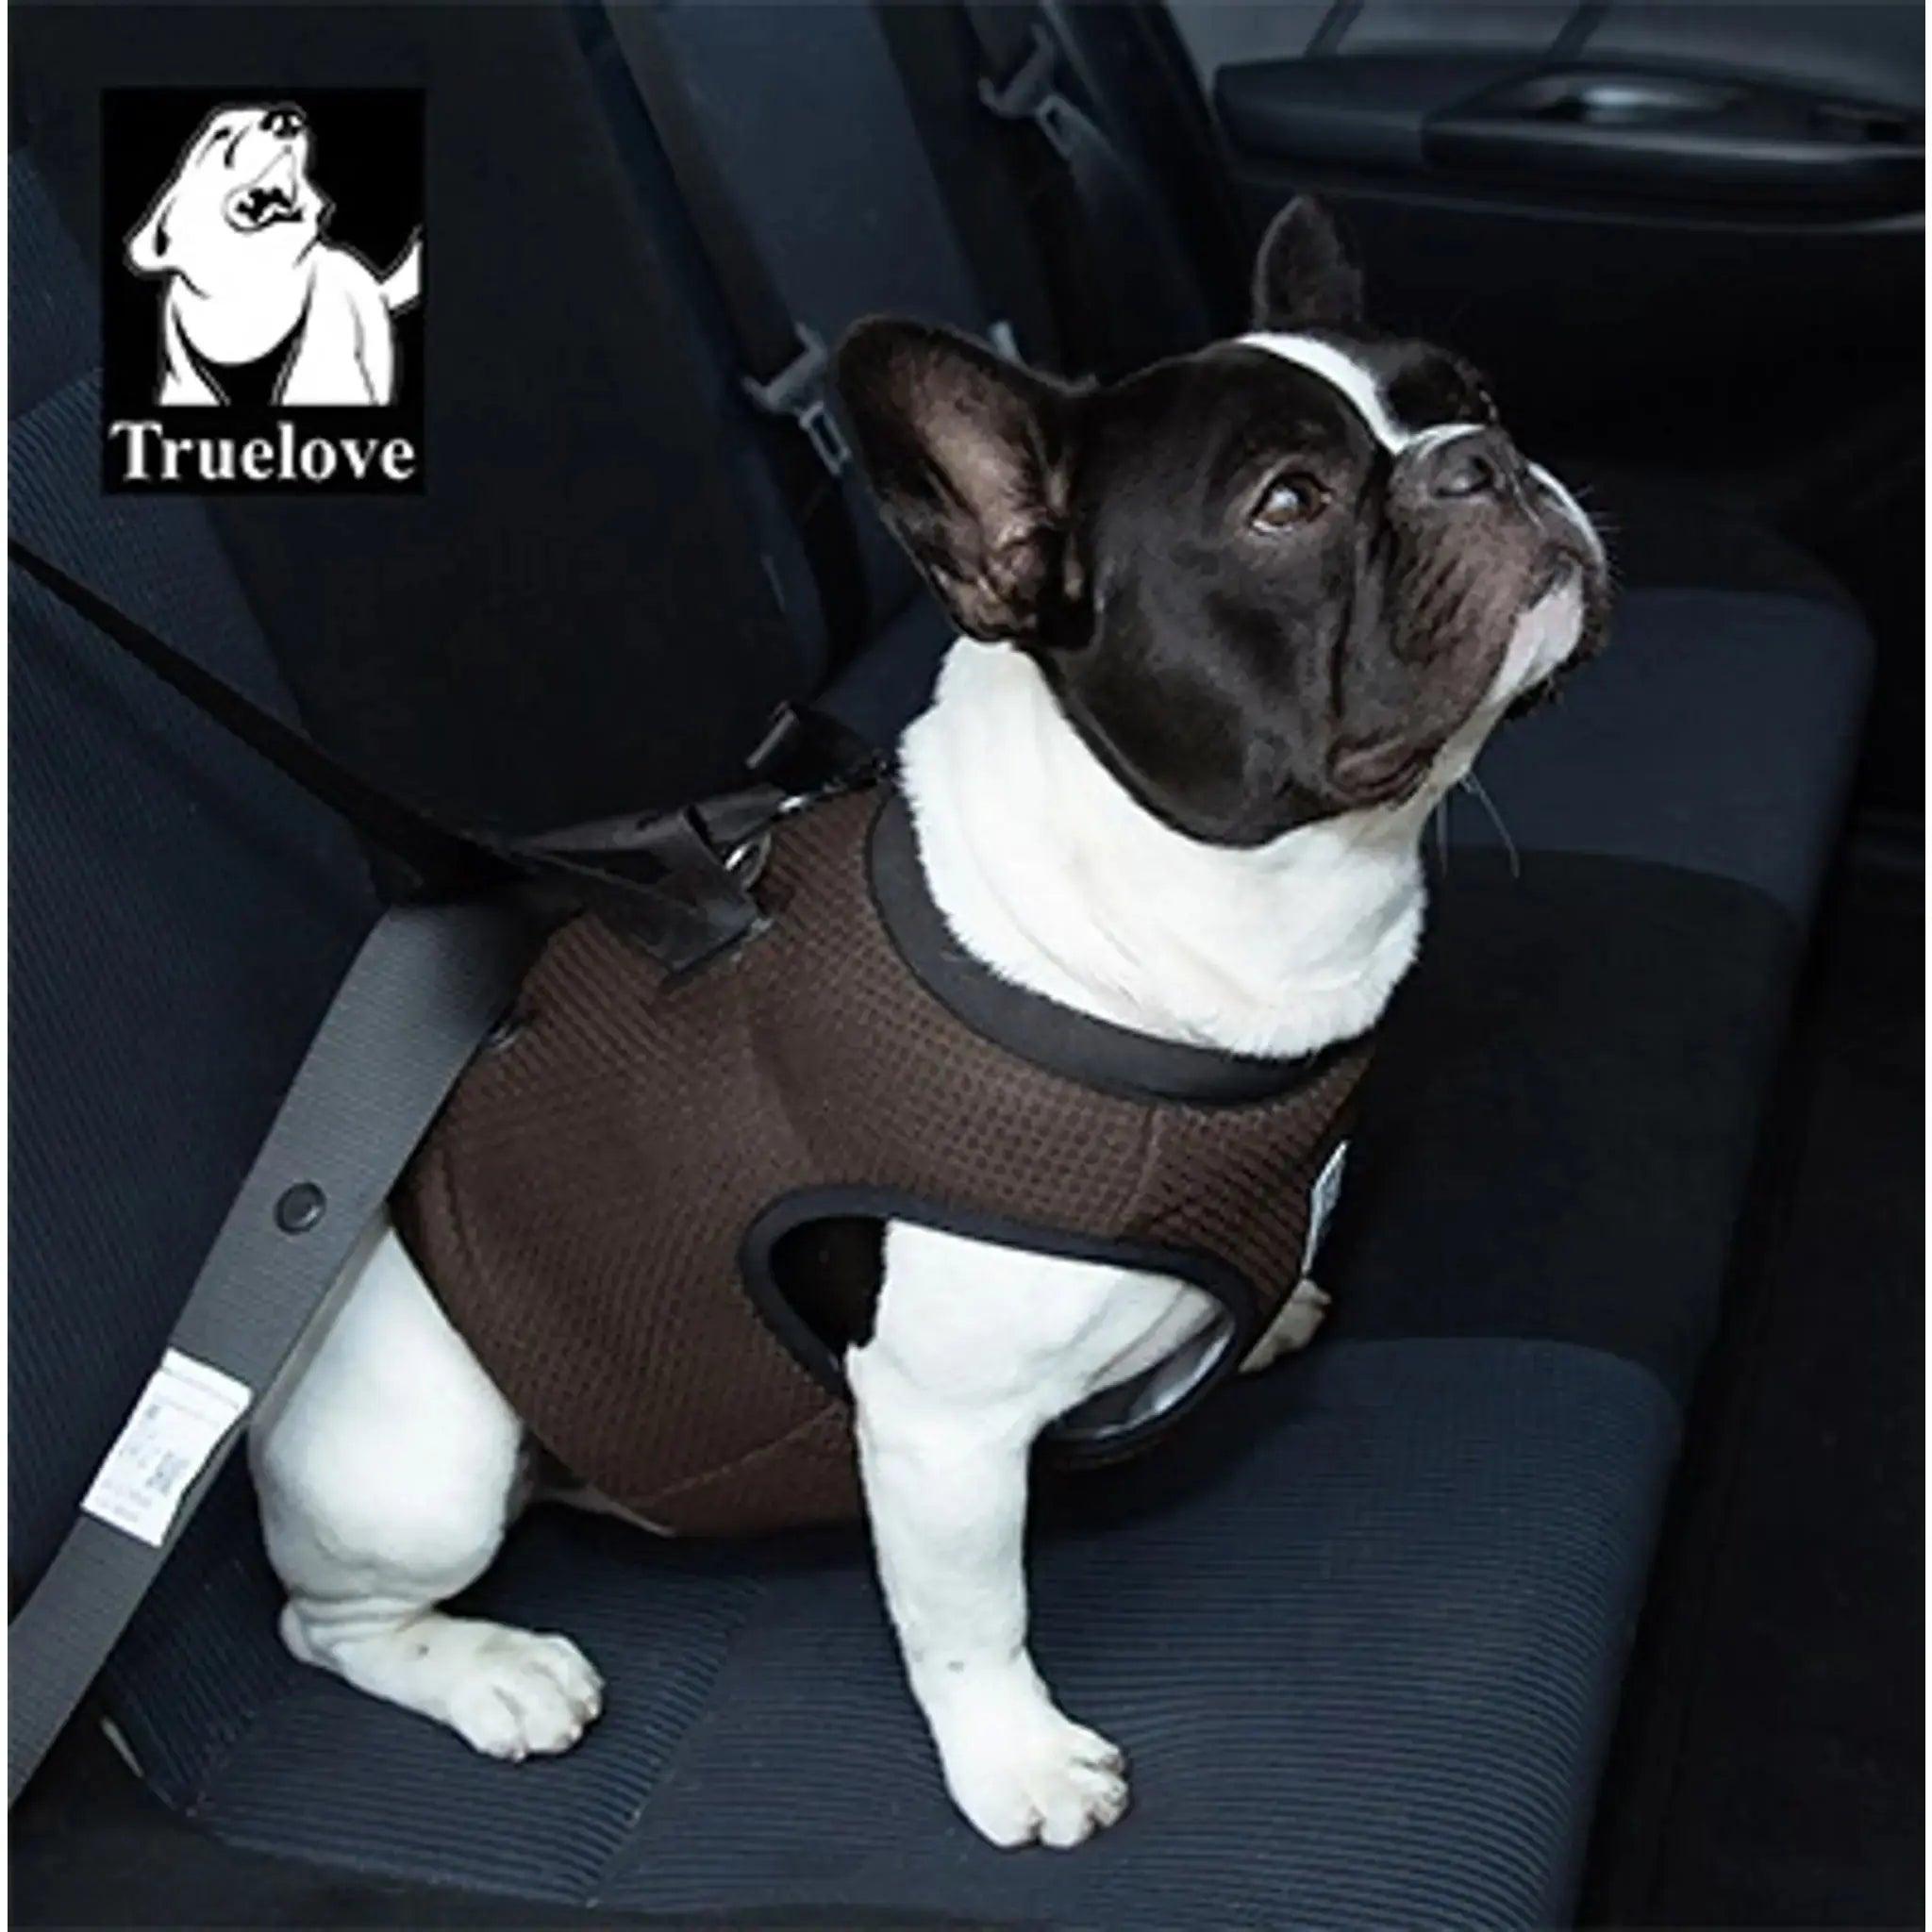 Französische Bulldogge mit braunem Truelove-Hundegeschirr. pet-shop24